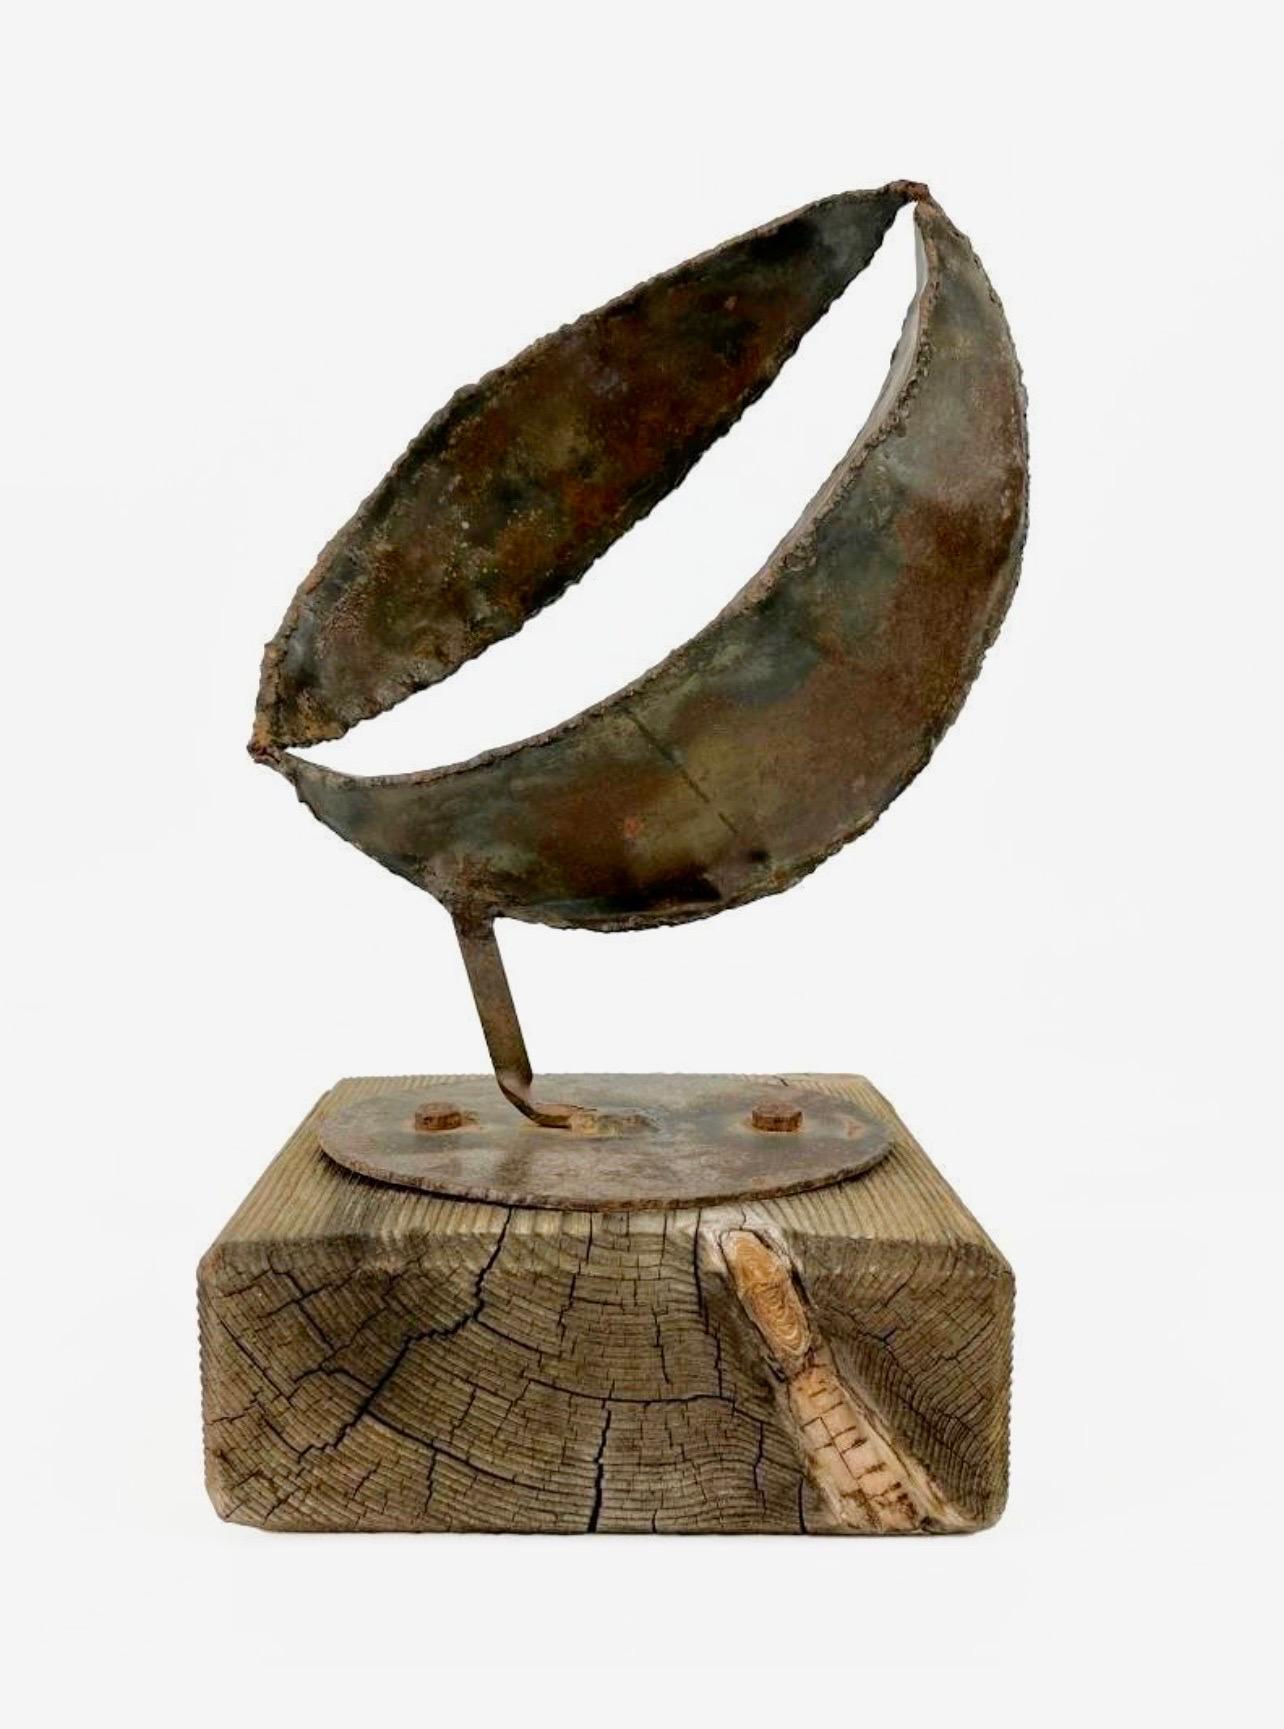 Eli Ilan (אלי אילן), 1928-1982 était un sculpteur israélien.
Forme de cosse organique abstraite. En acier ou en fer, montée sur un socle en bois.
Ilan est né à Winnipeg, au Manitoba. Il s'inscrit à un programme de pré-médecine à l'université de